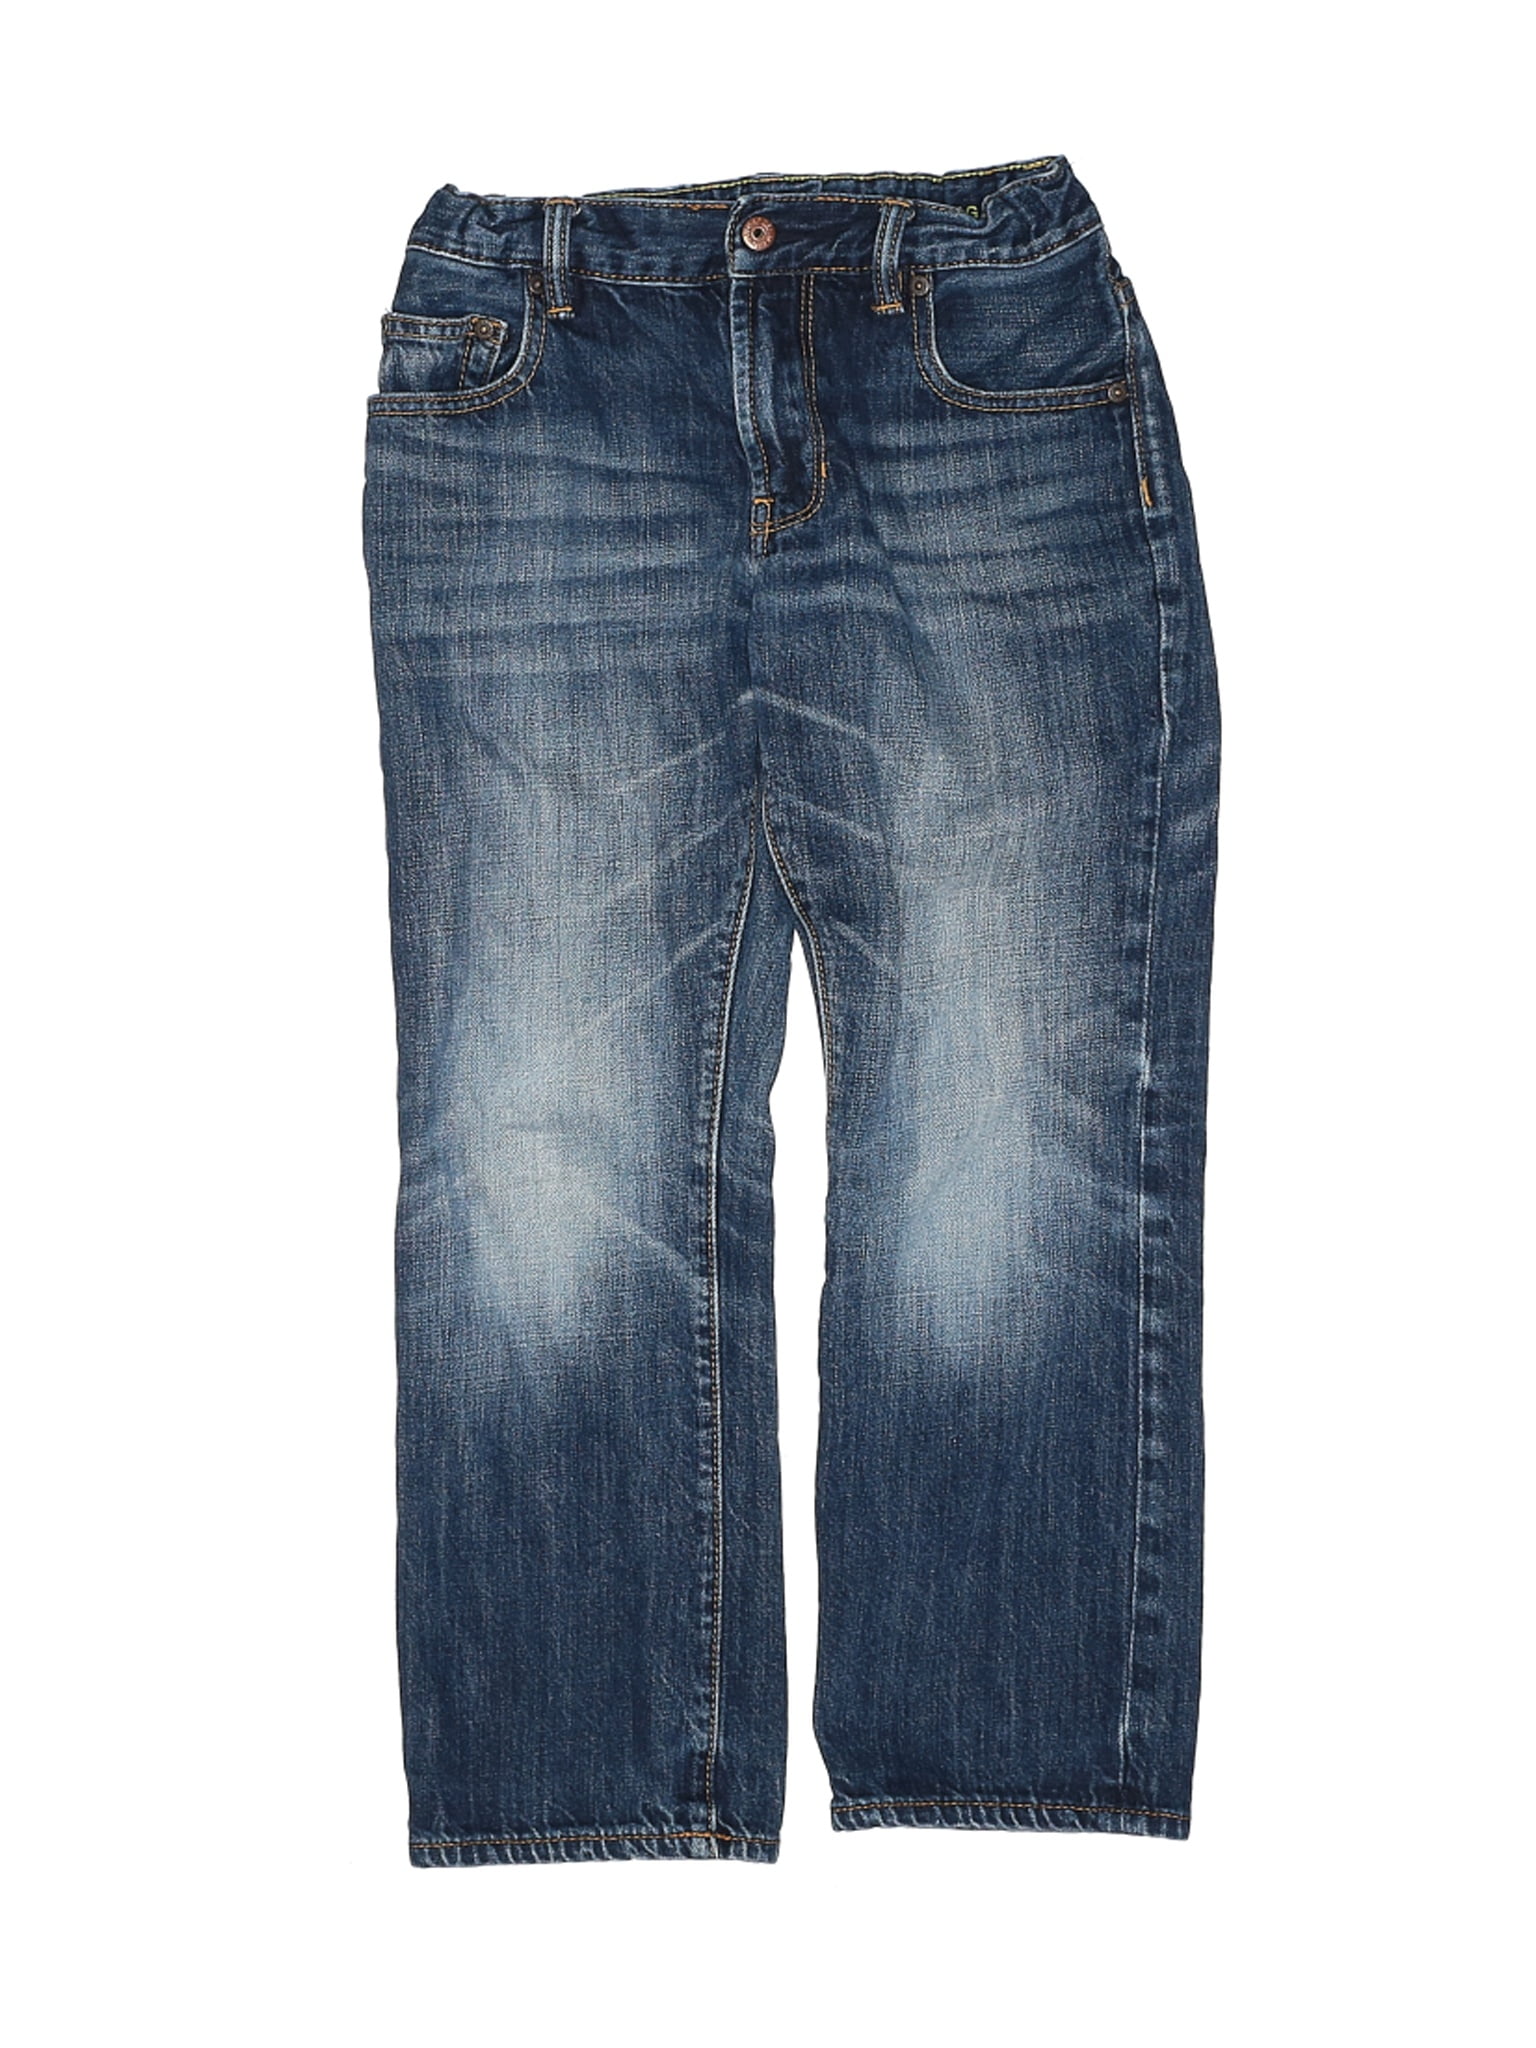 size 8 husky jeans